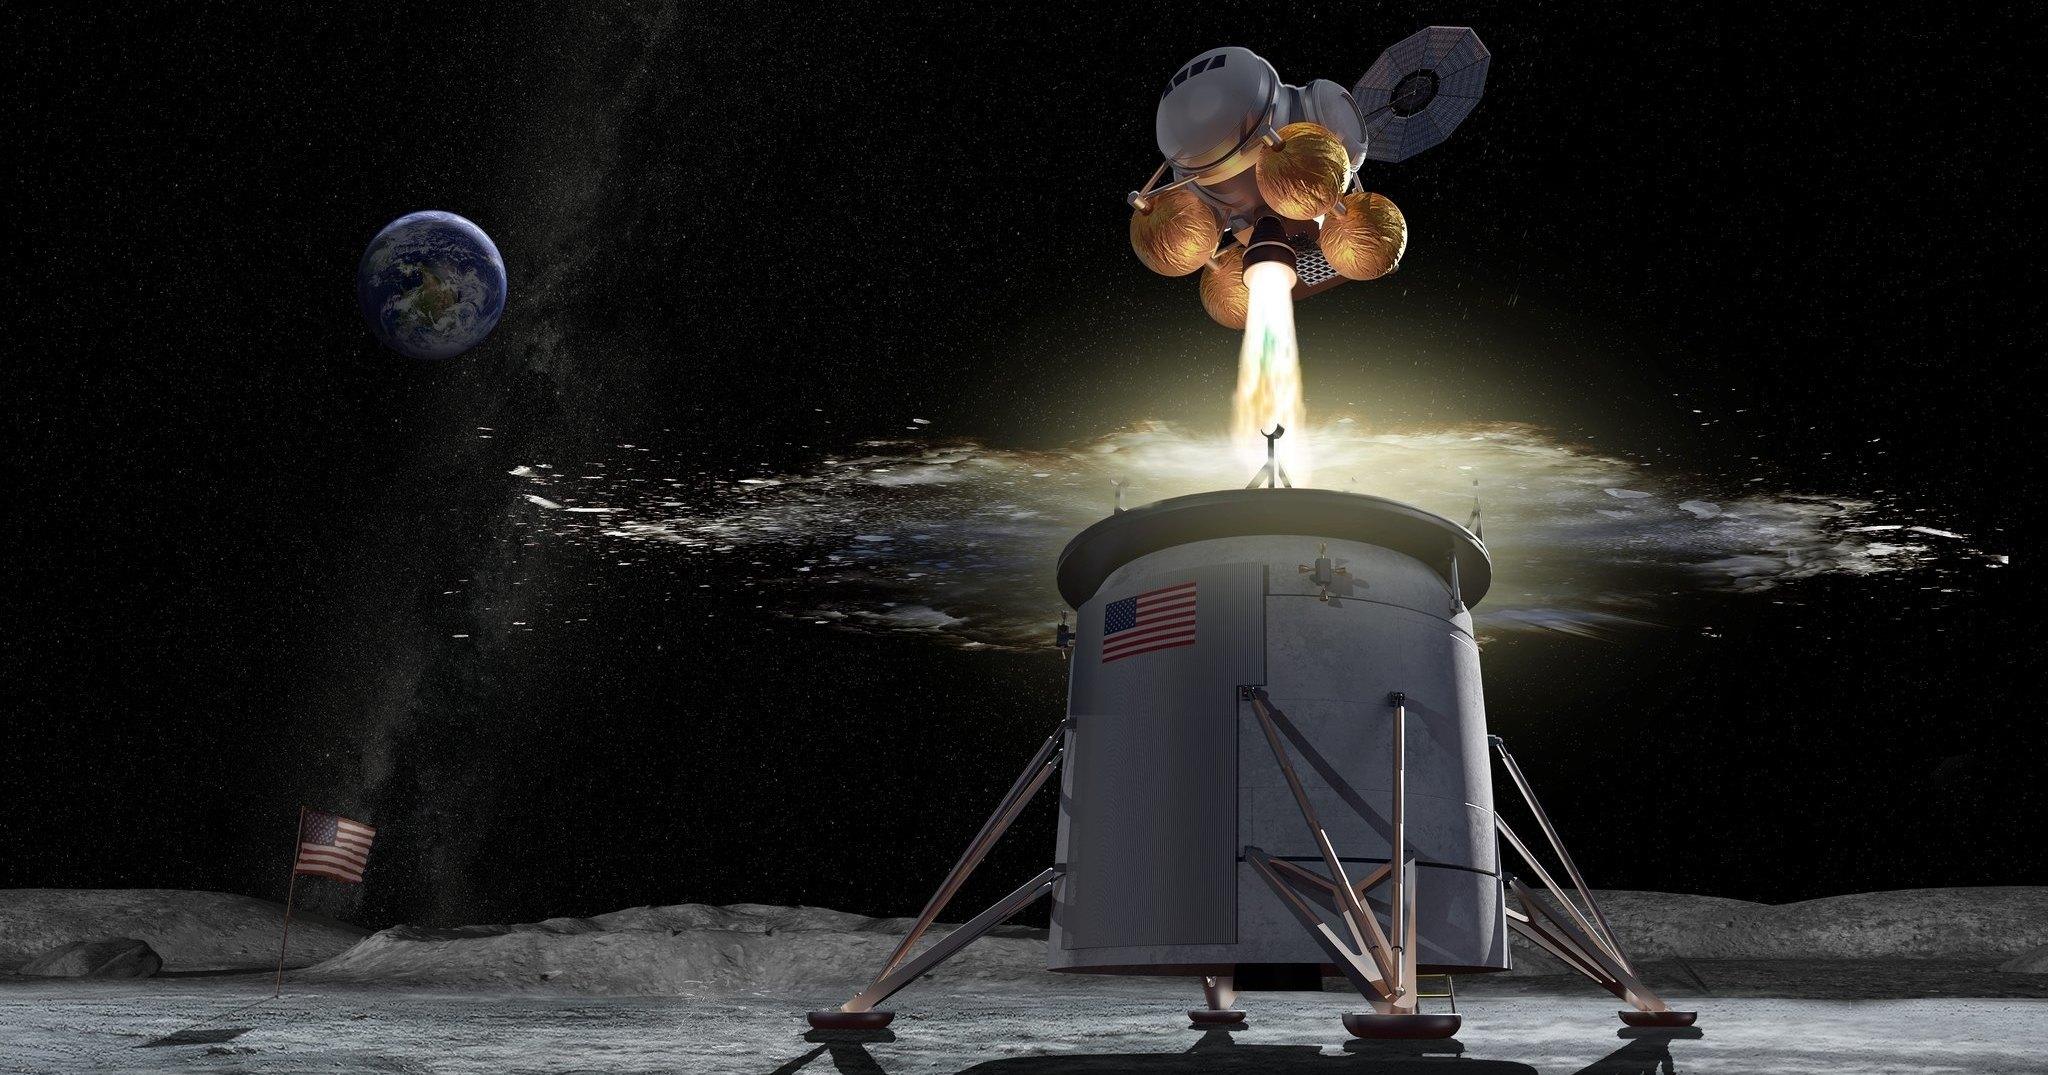 A NASA annuncia piani ambiziosi per l'esplorazione spaziale